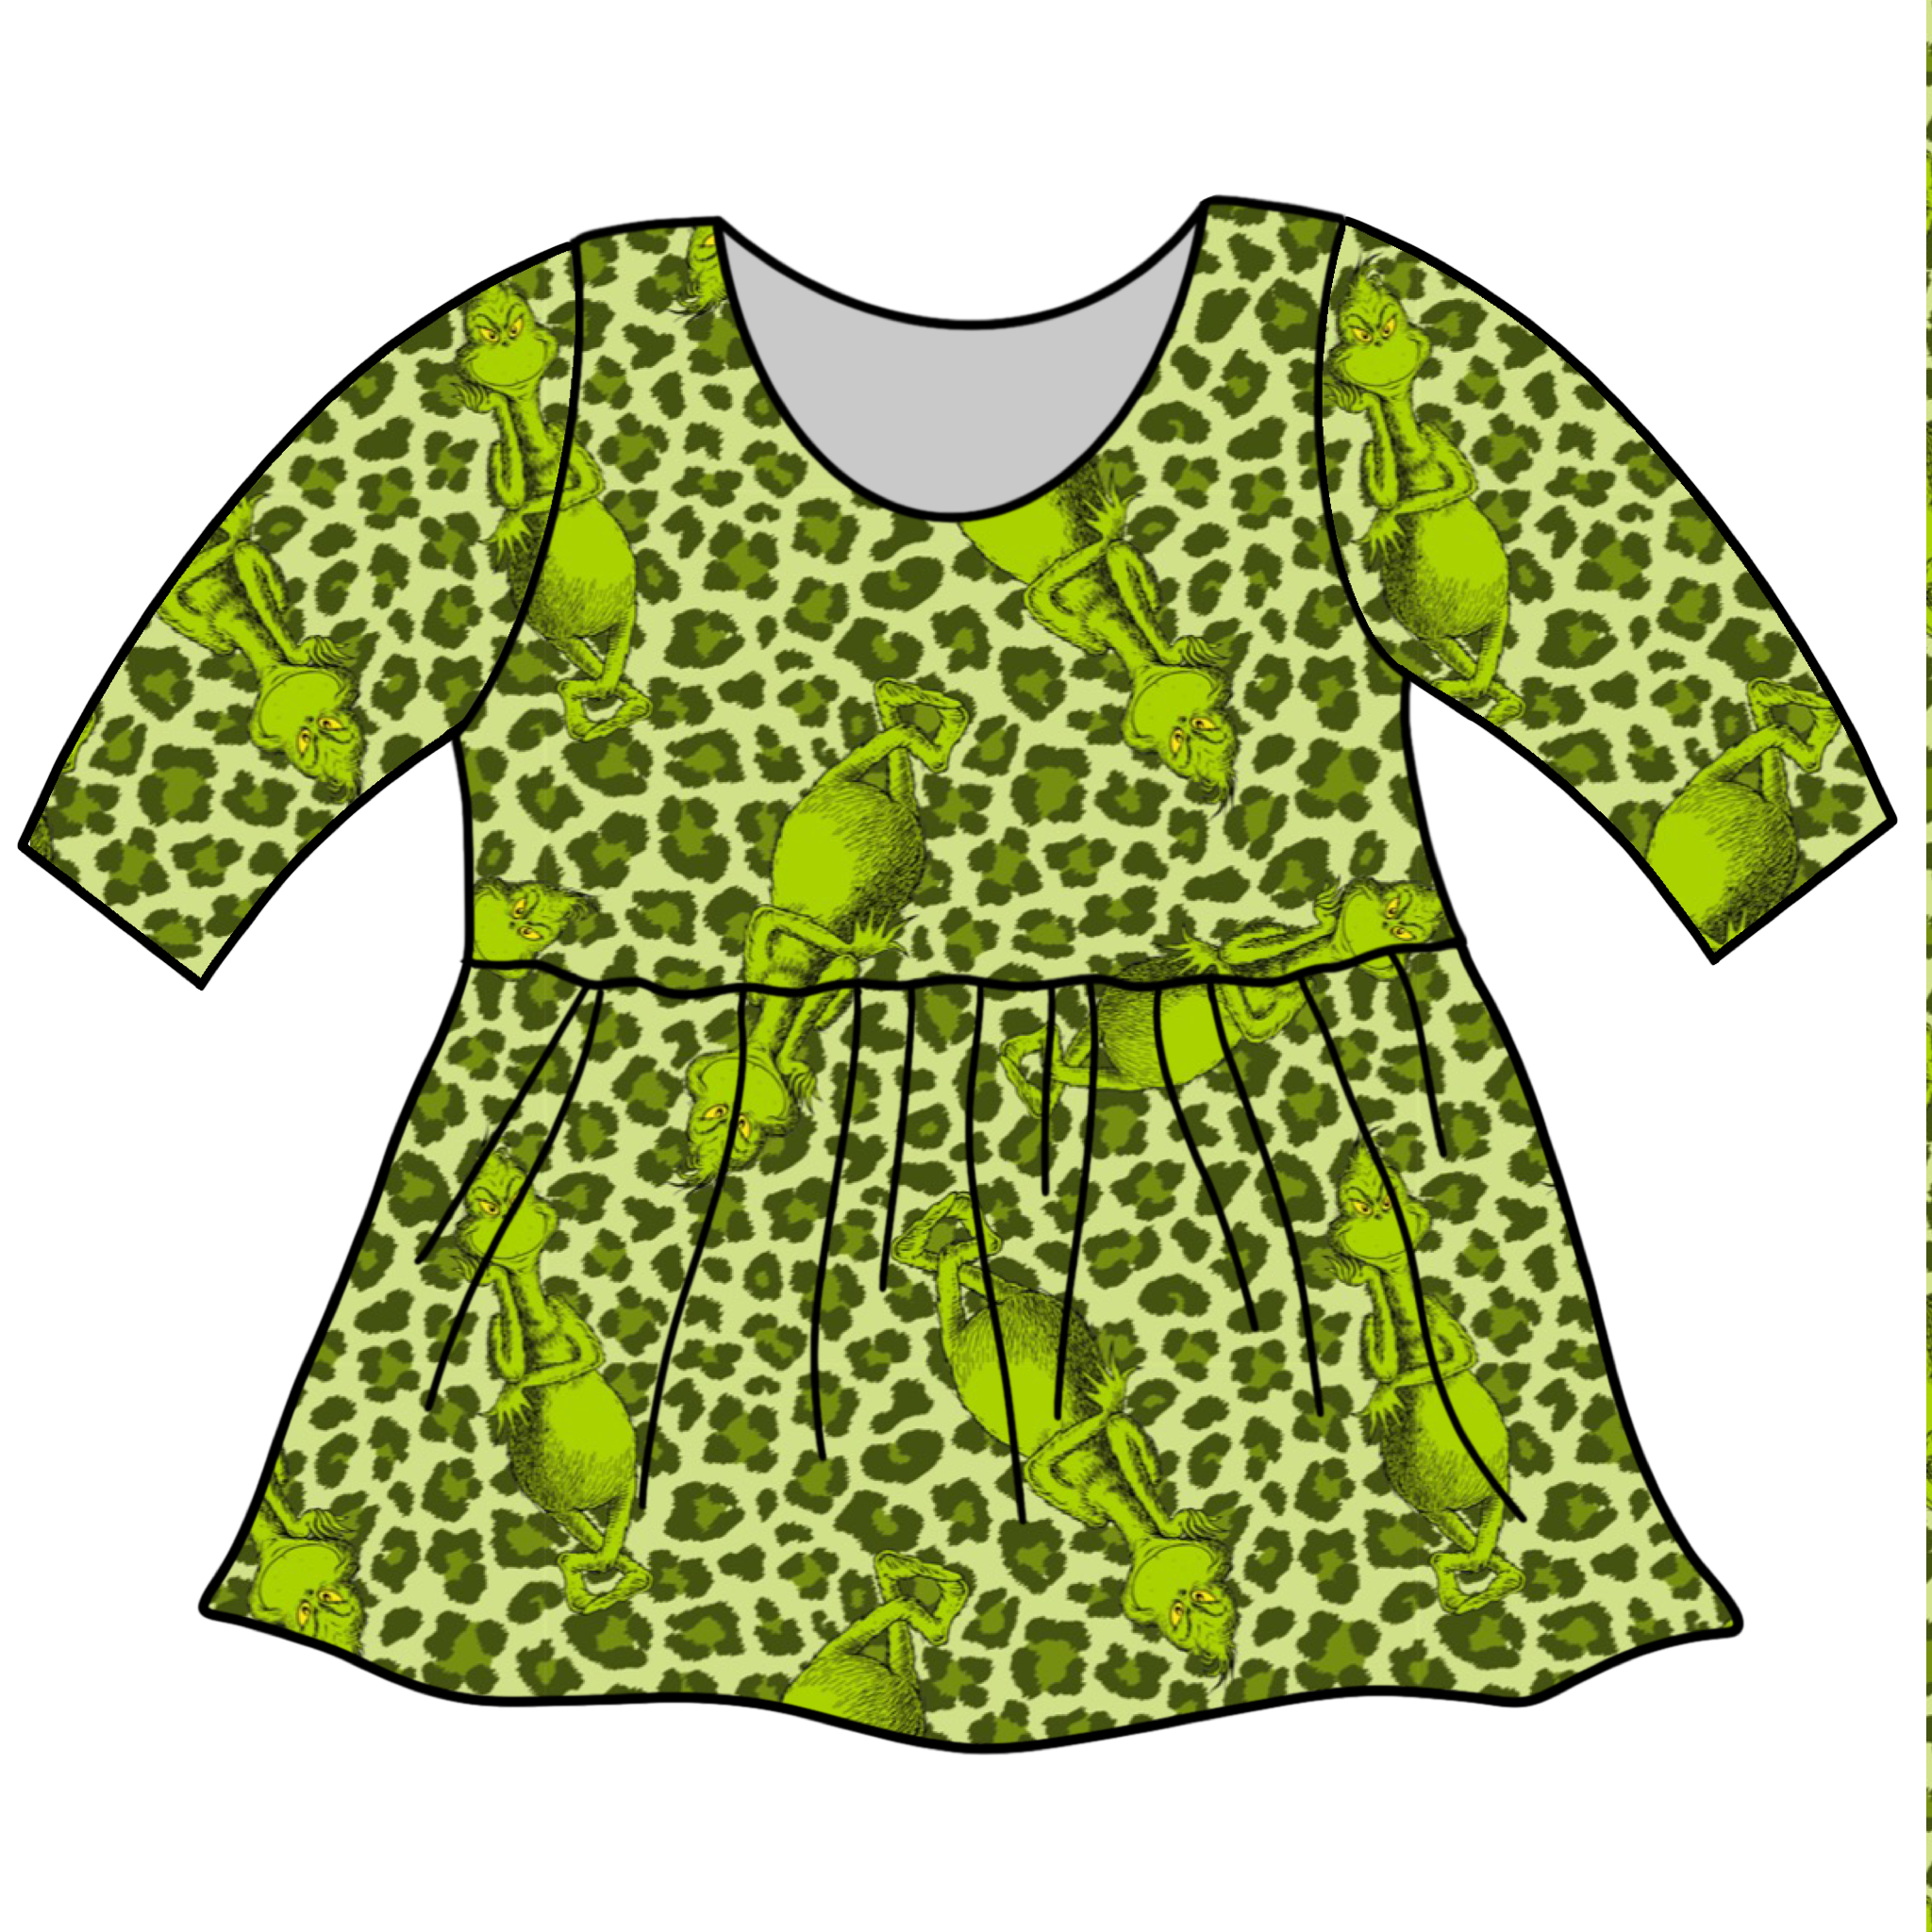 Cheetah Green Guy & Friends Custom Items